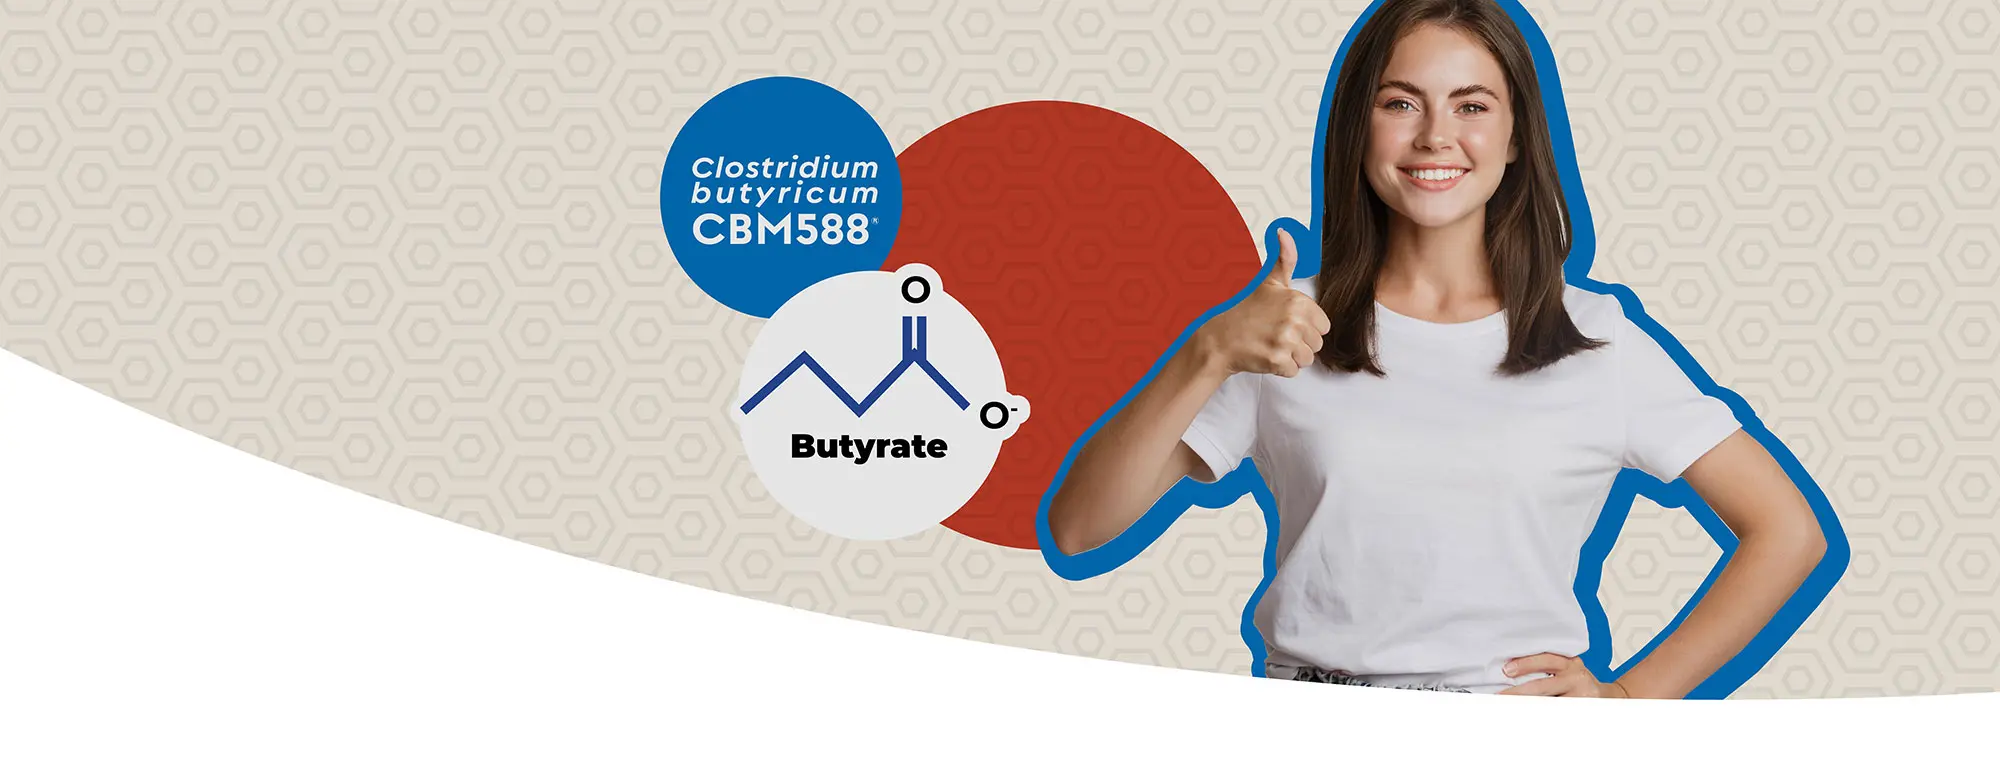 Clostridium butyricum CBM588®